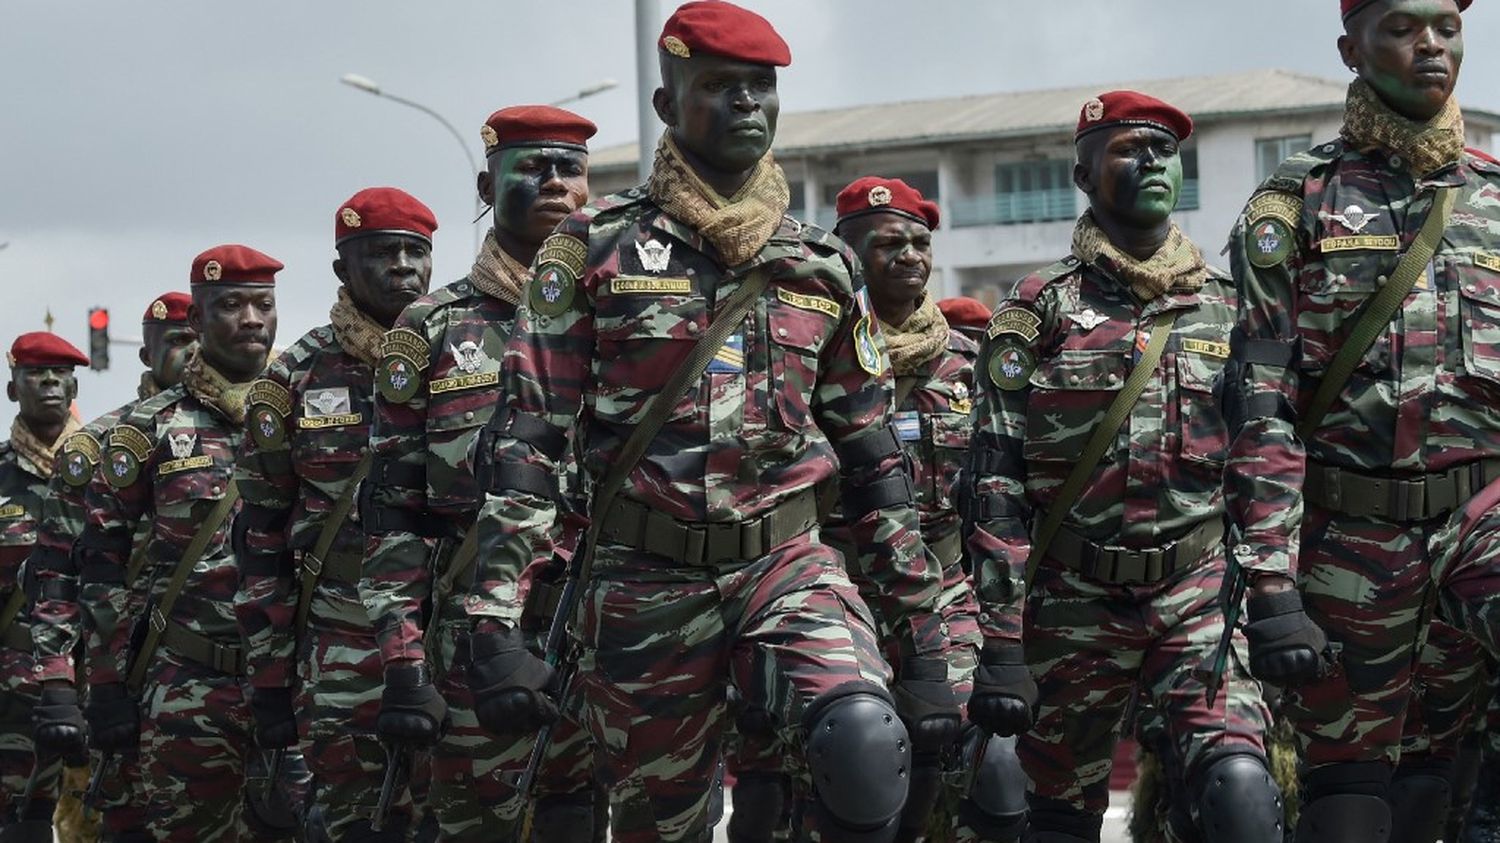 Le colonel Assimi Goita accorde la grâce présidentielle aux 49 soldats ivoiriens